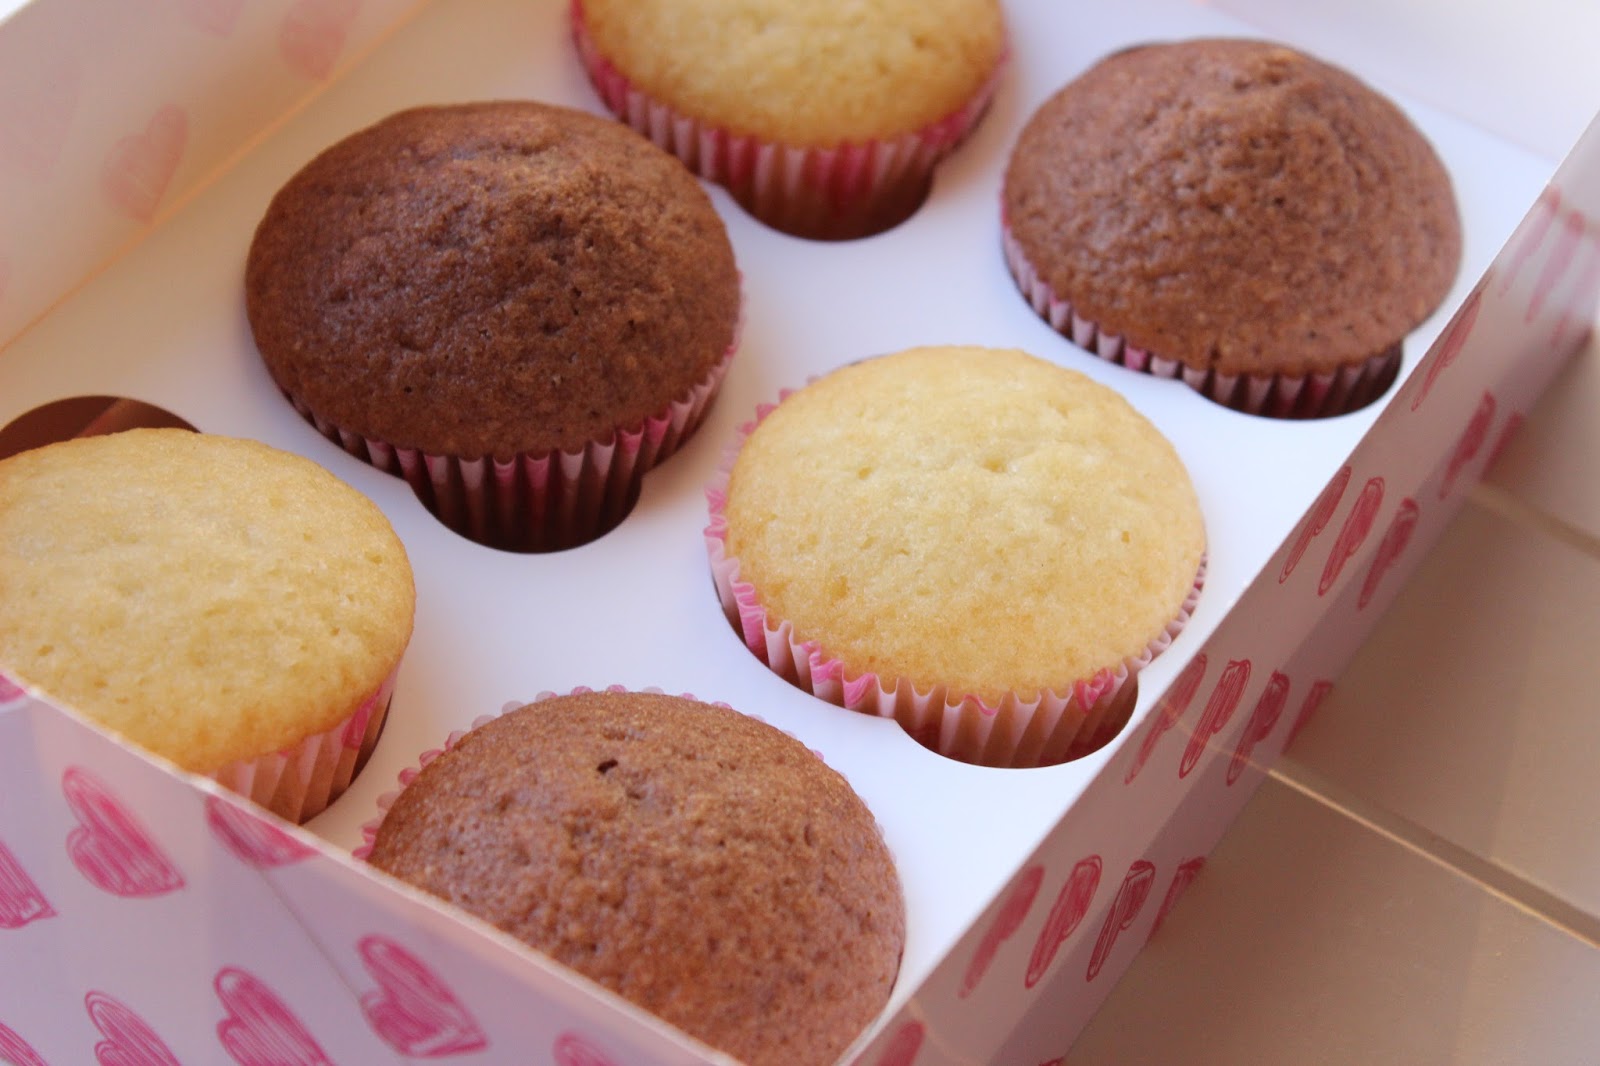 gruensteinKitchen: Helle Muffins (Grundrezept) - Ideal für Cupcakes